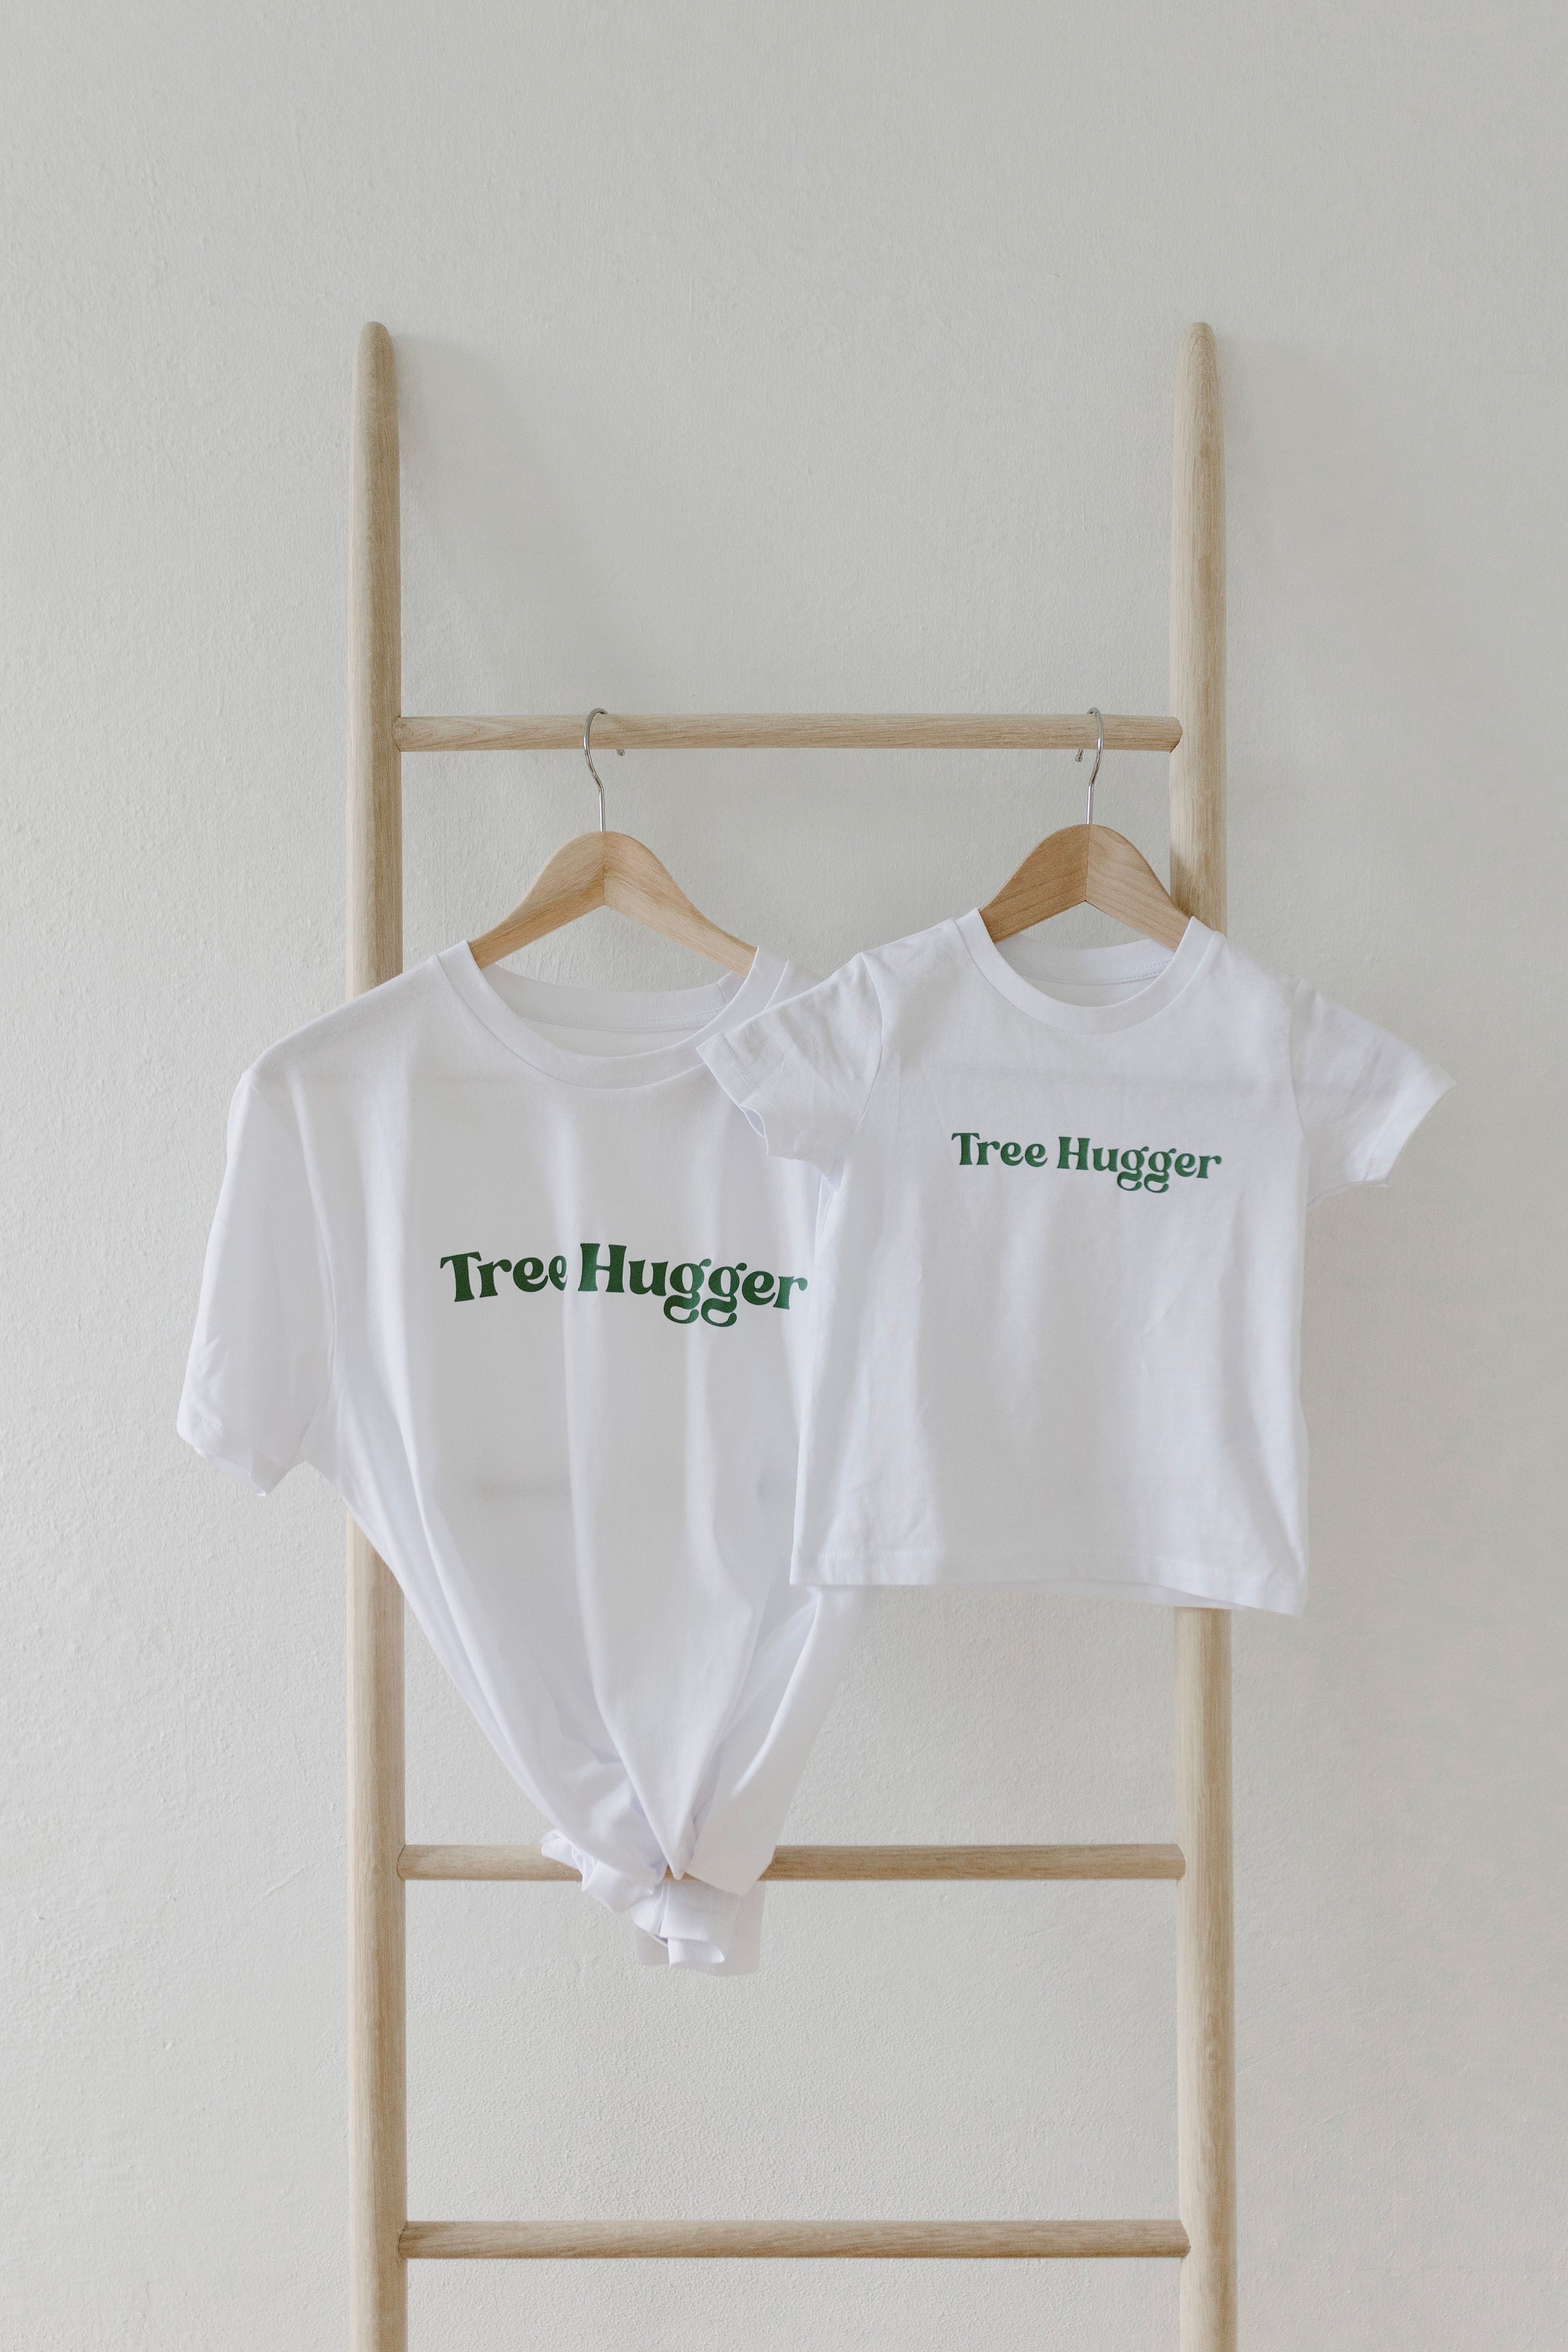 Tree Hugger tshirt